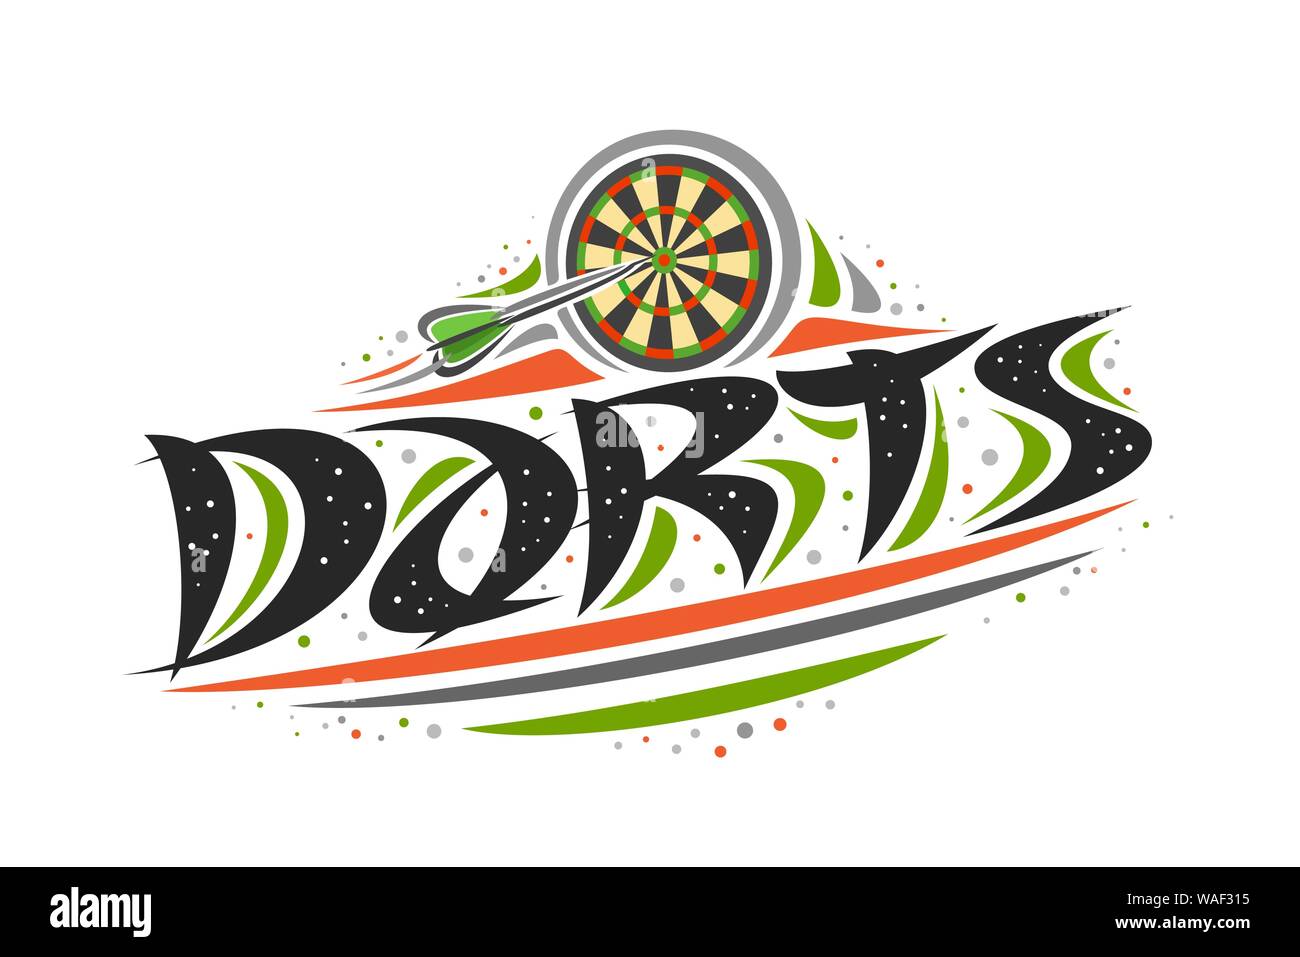 Il logo del vettore per il gioco delle freccette, creative illustrazione della freccia gettati in dartboard, decorativo originale carattere tipografico spazzola per word freccette, abstract semplicistico Illustrazione Vettoriale